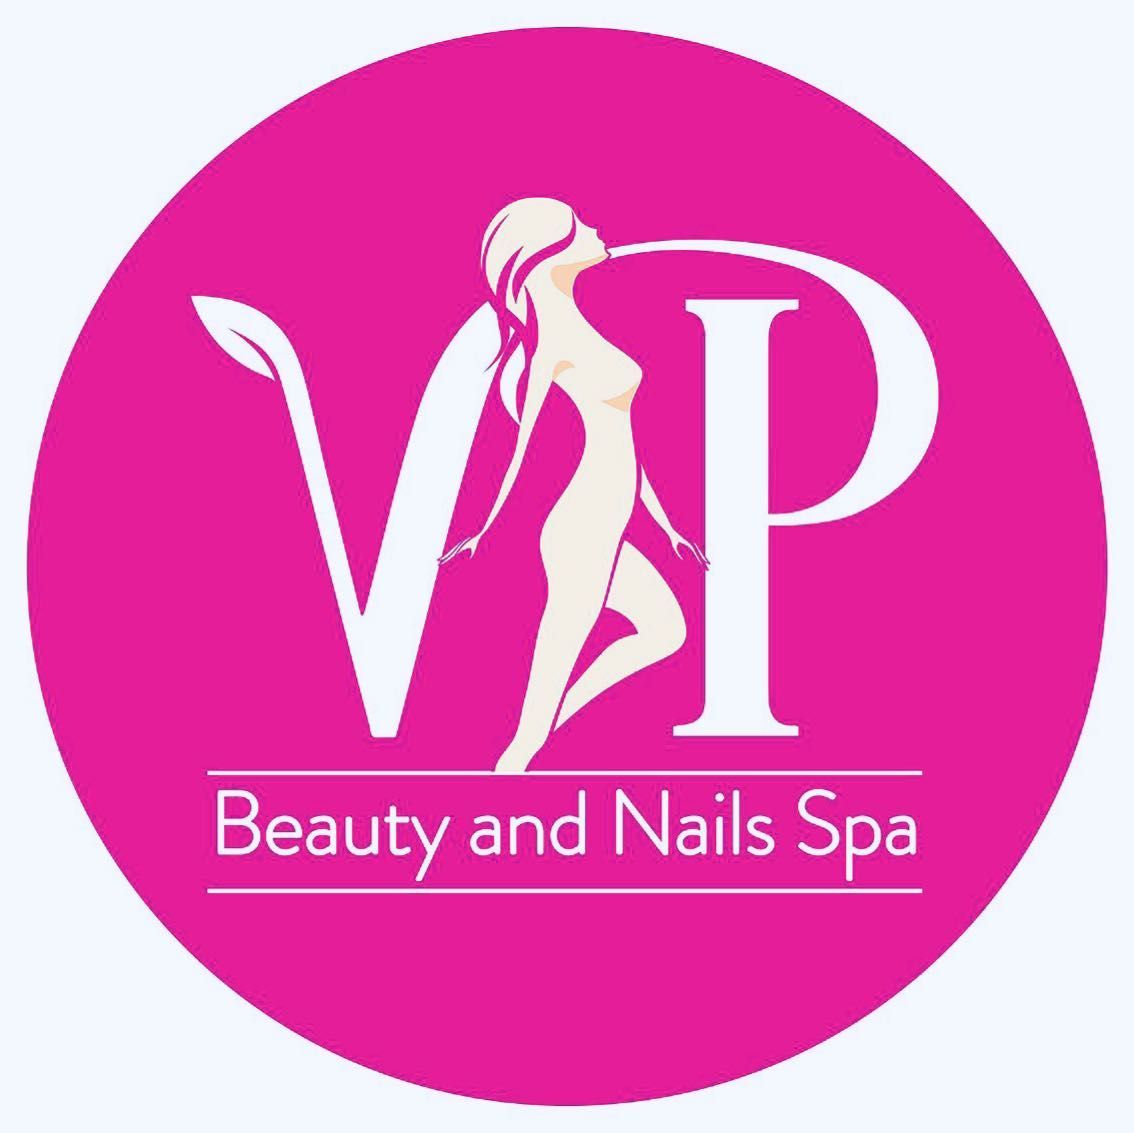 VP Beauty and Nails Spa, 3715 Willowsbrook Way, Kissimmee, 34746